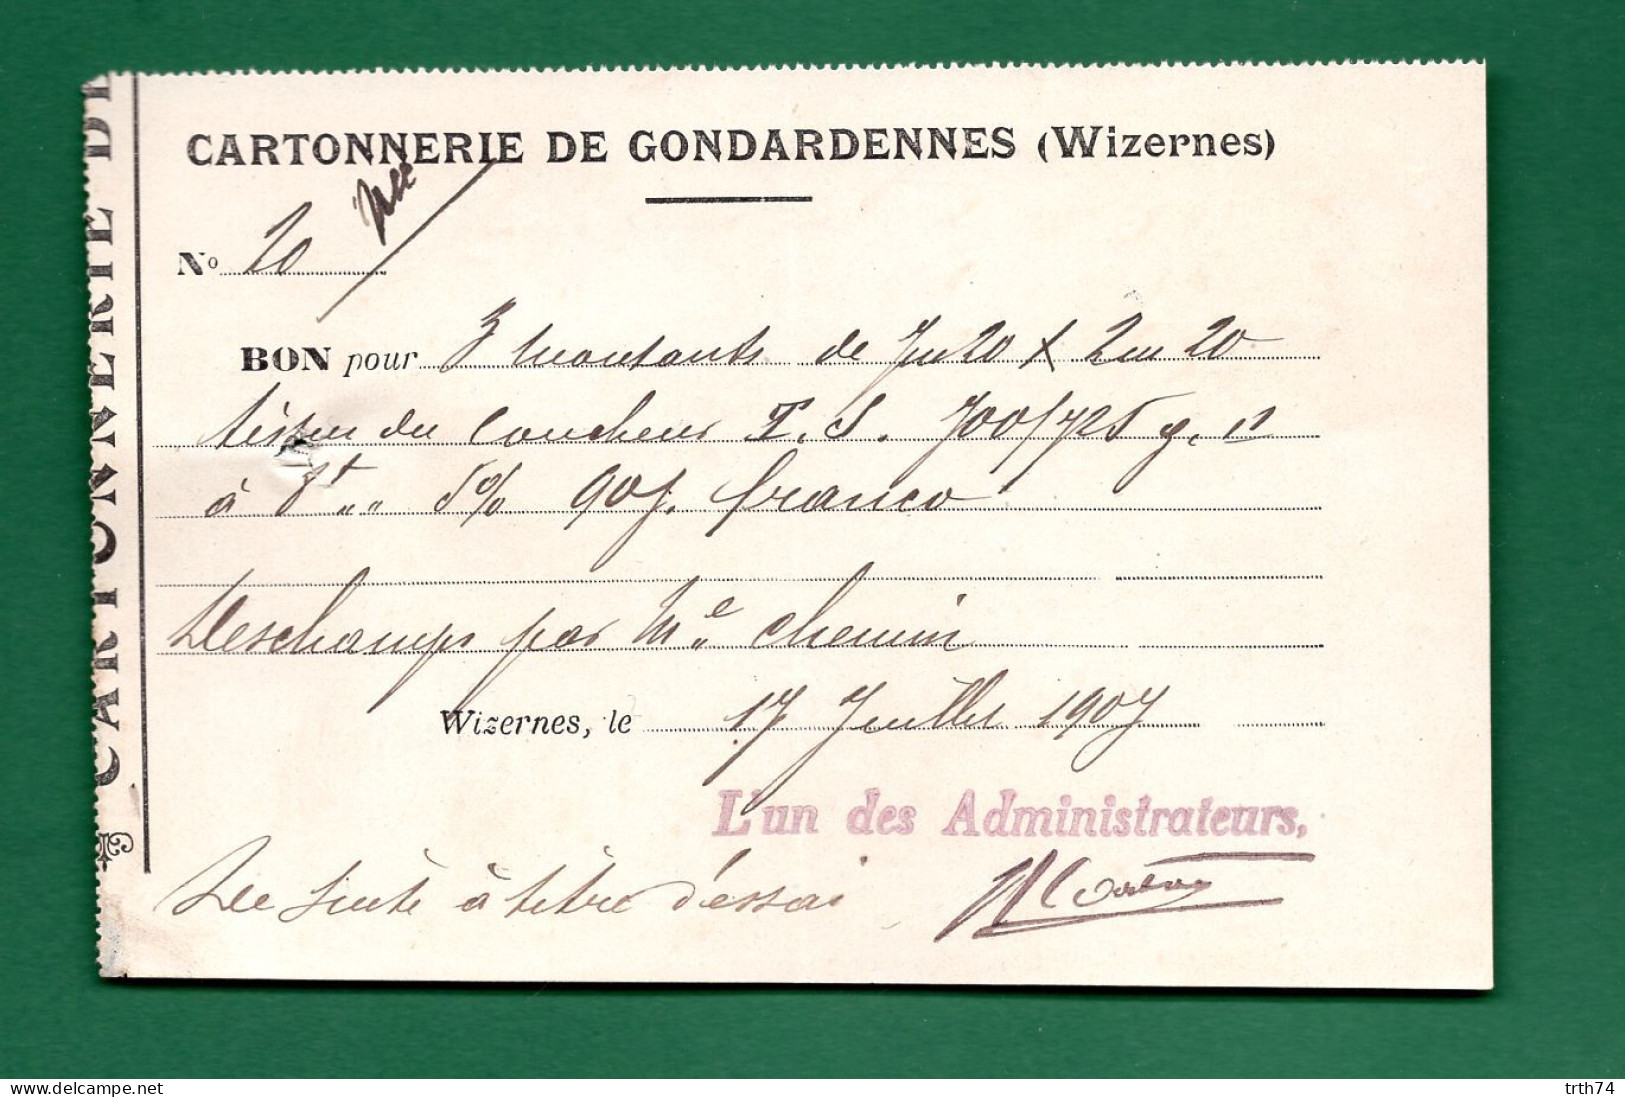 62 Wizernes Cartonnerie De Gondardennes 17 Juillet 1907 - Drukkerij & Papieren